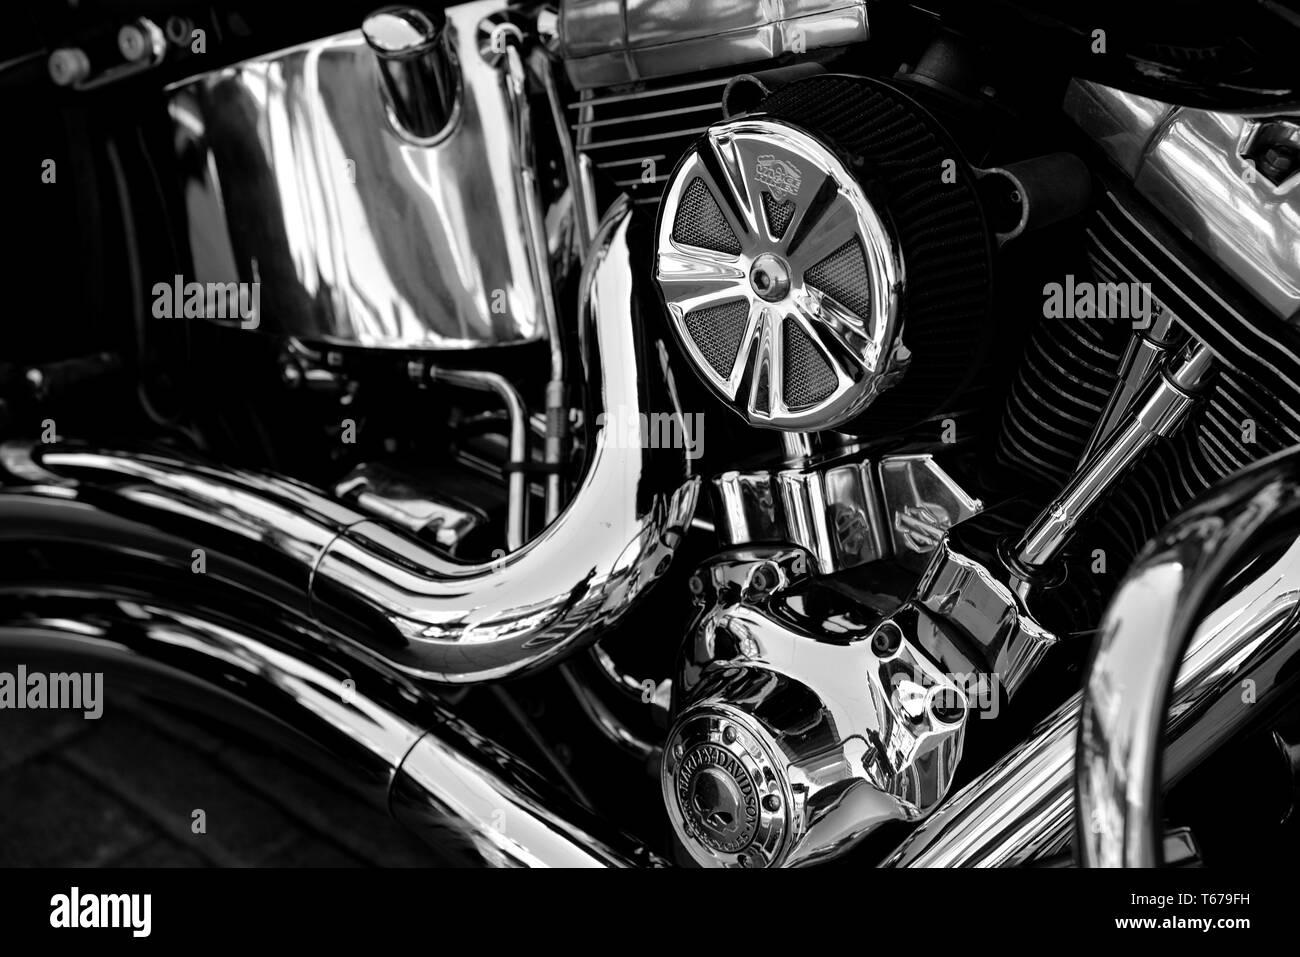 Détail du moteur d'une moto Harley Davidson. Banque D'Images